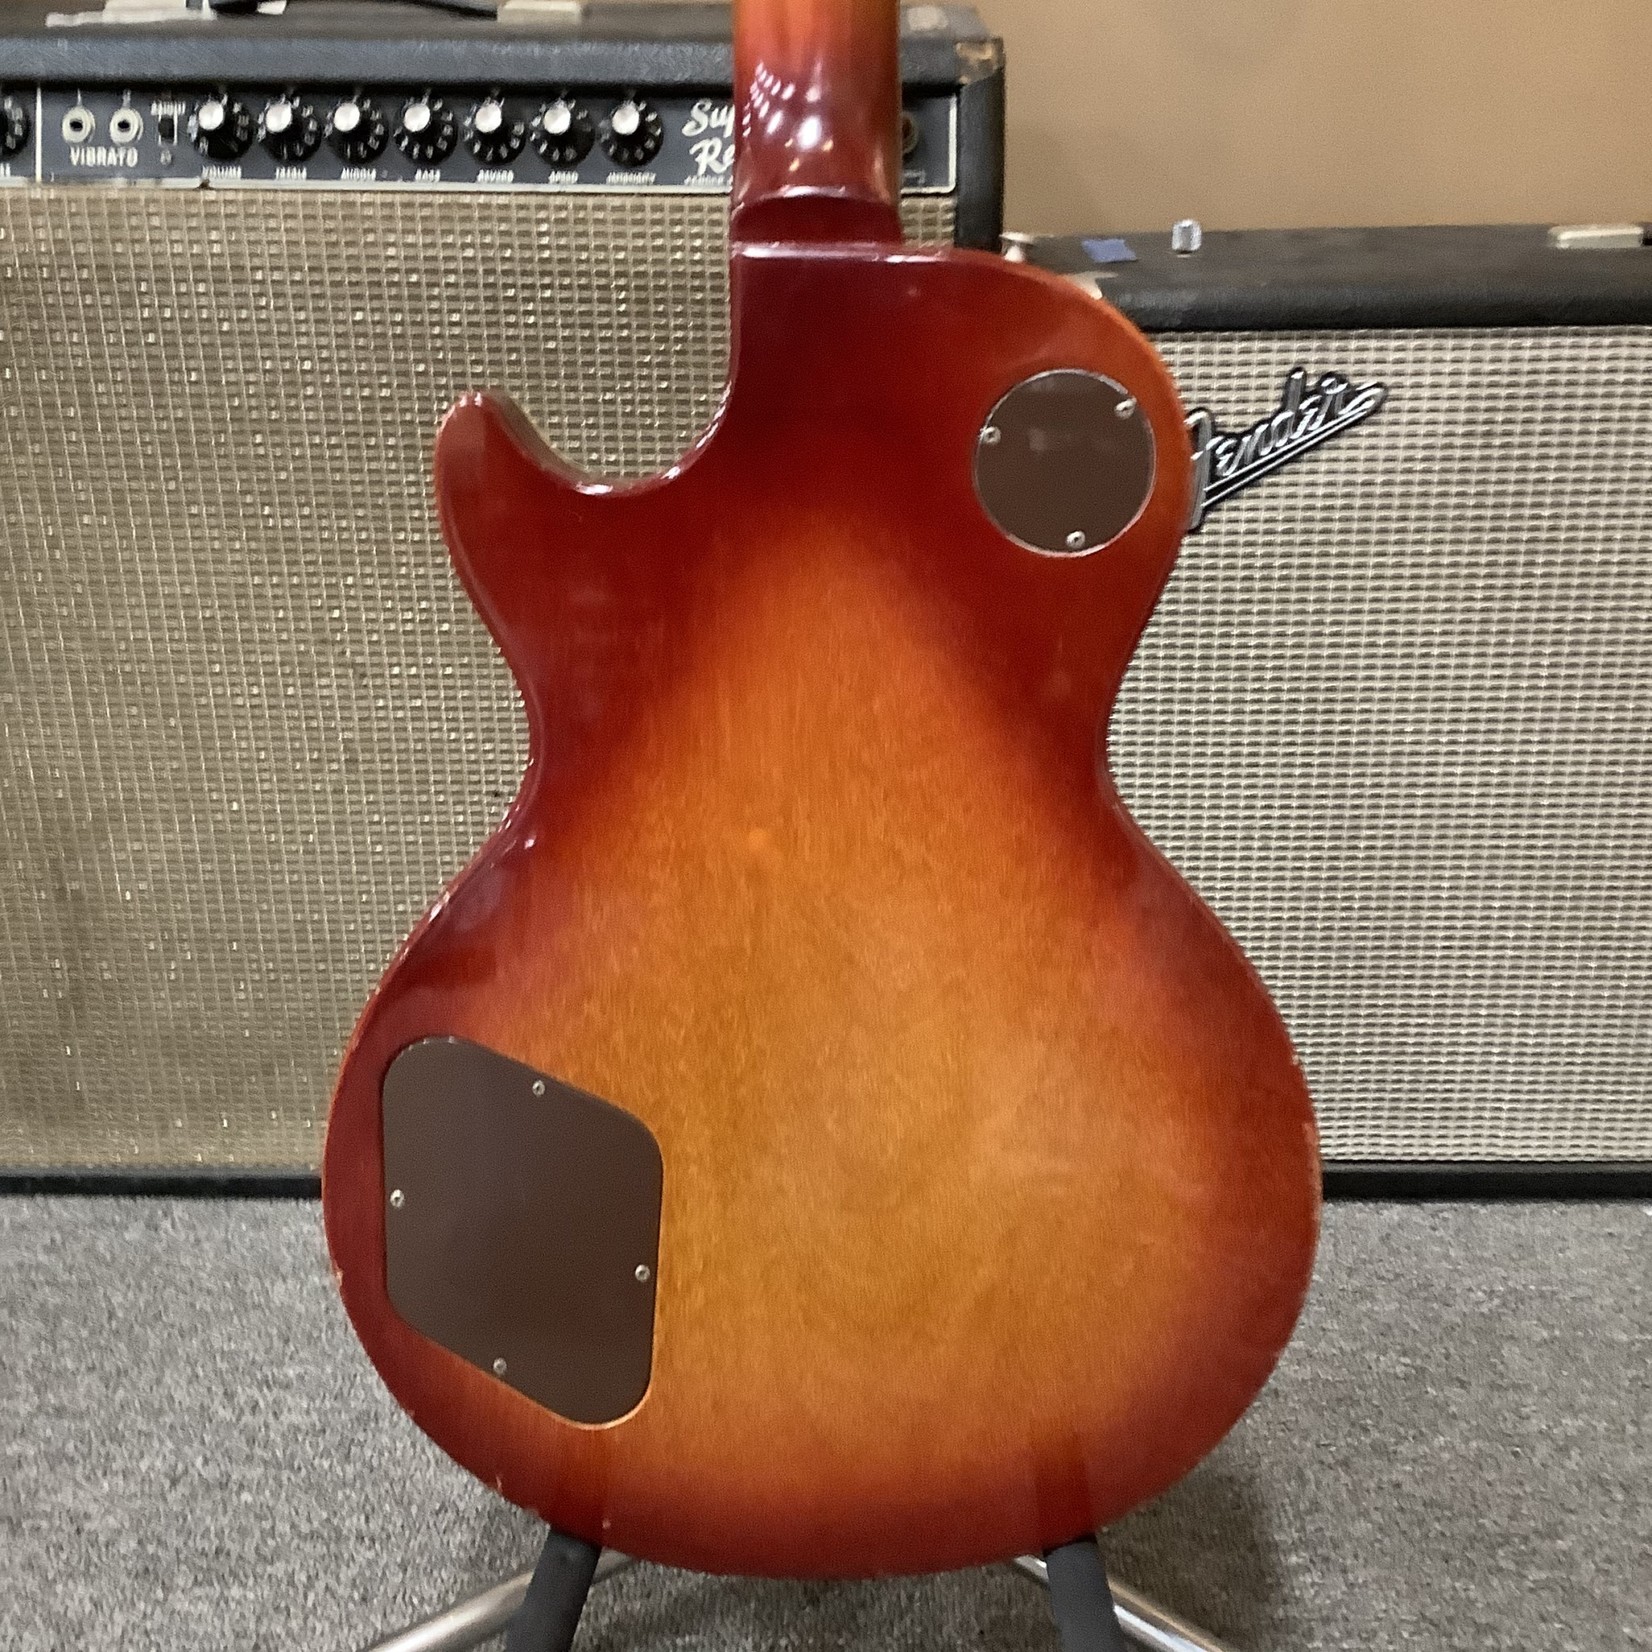 Gibson 1975 Gibson Les Paul Deluxe Cherry Sunburst